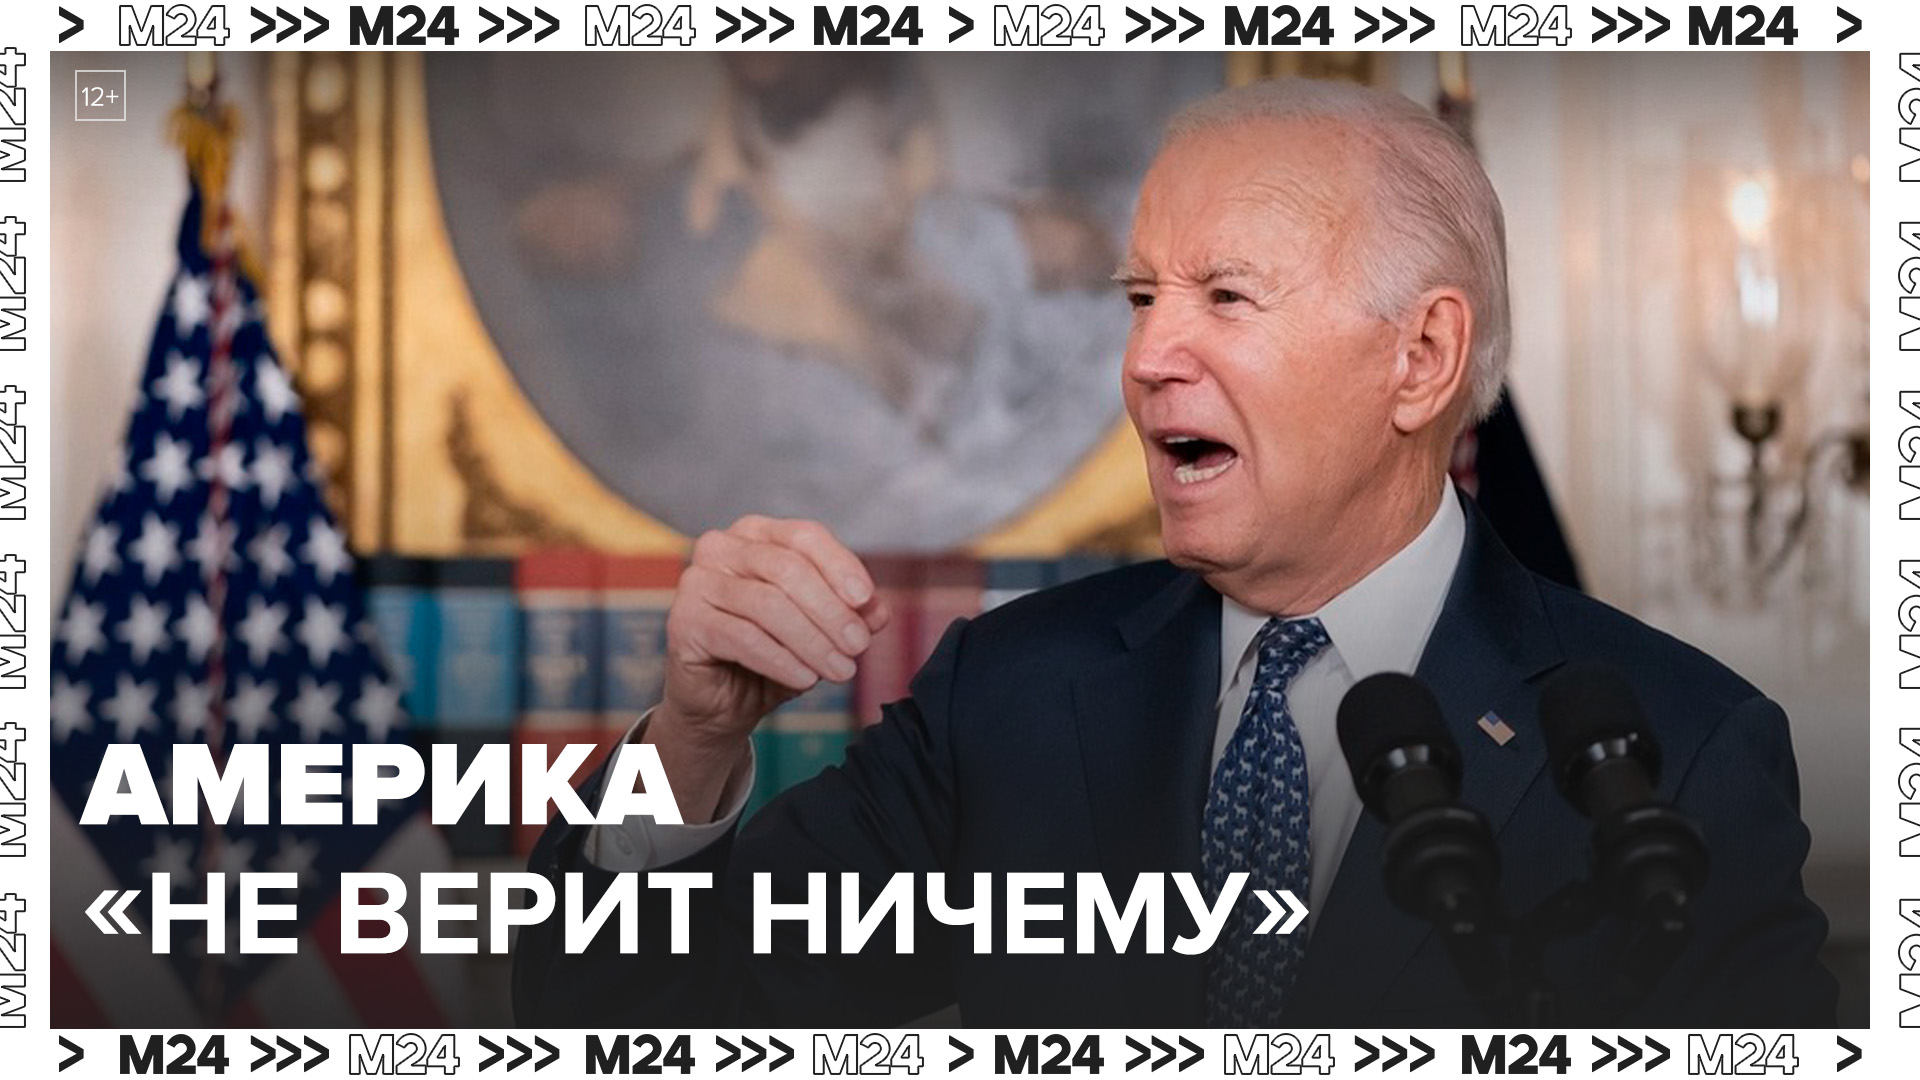 В Белом доме призвали американцев "не верить ничему" в интервью Путина Такеру Карлсону - Москва 24